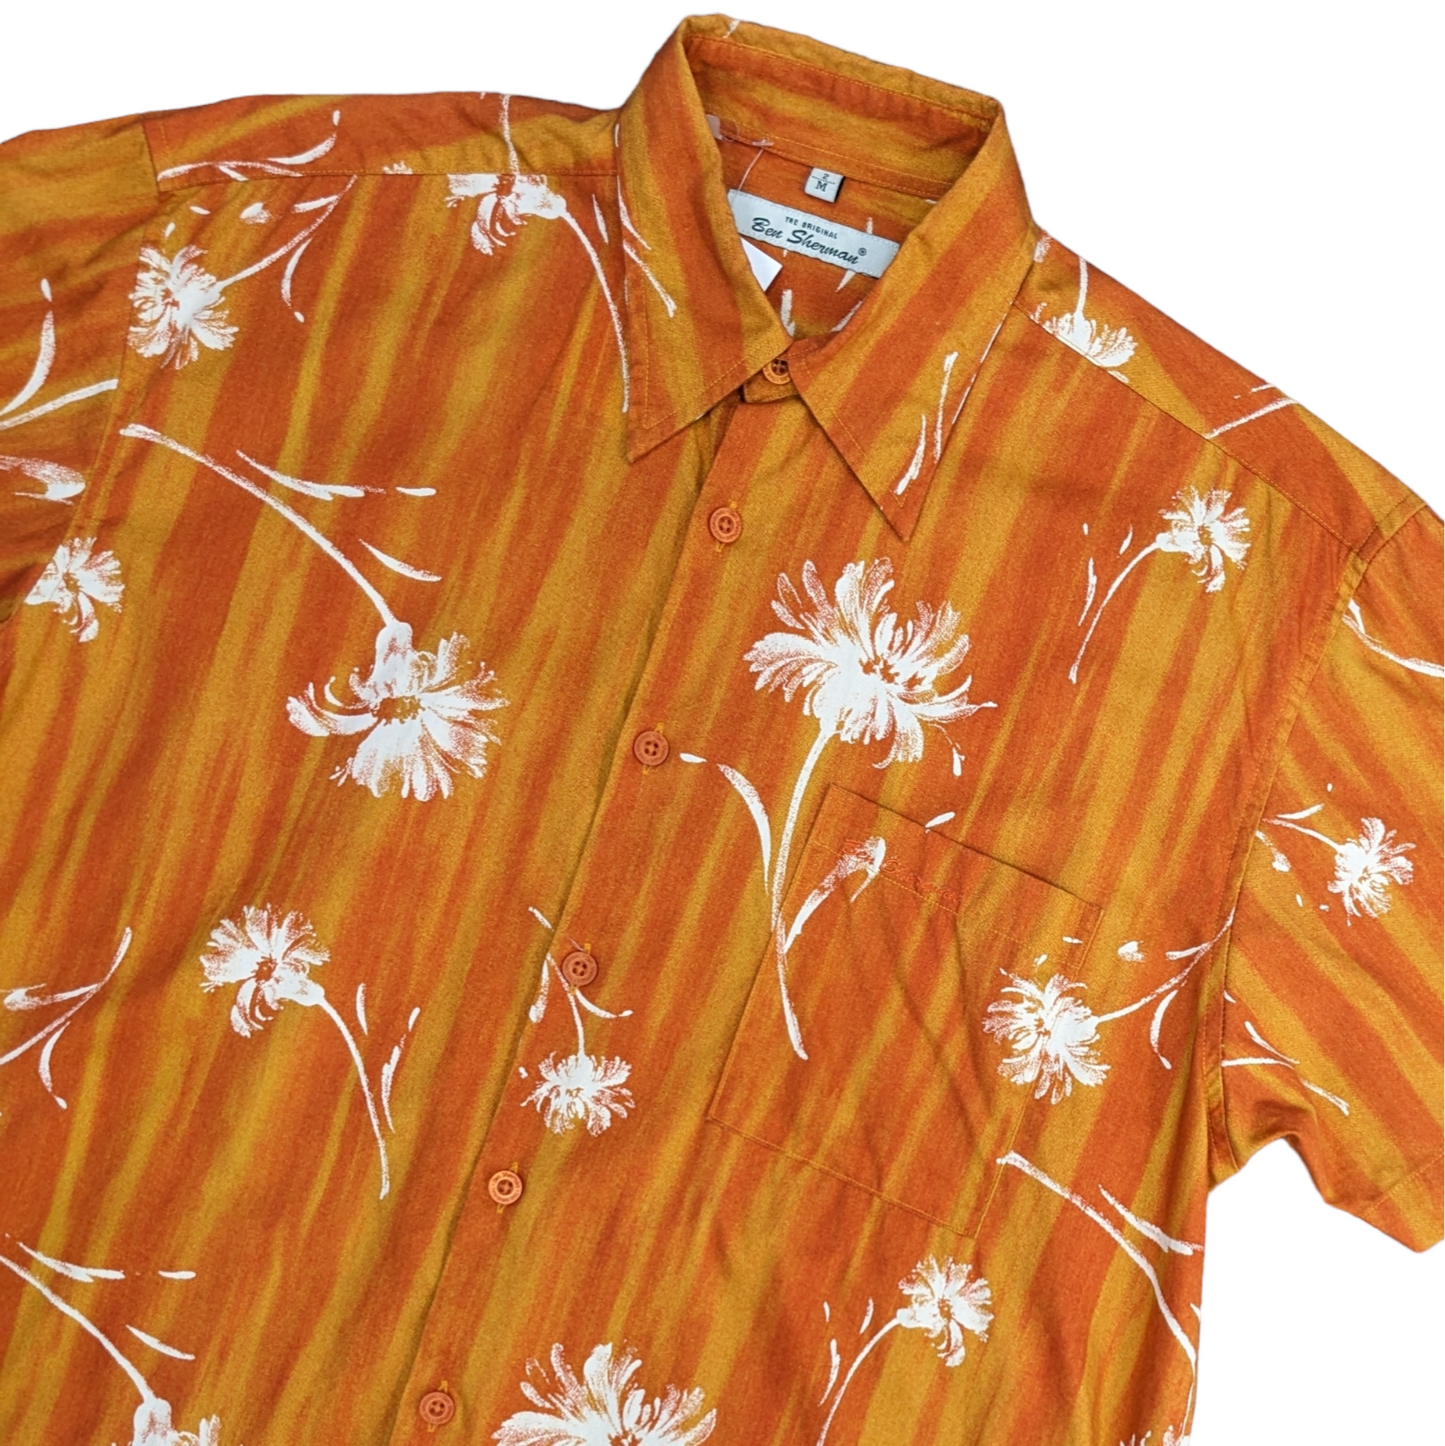 90s Ben Sherman Hawaiian Shirt Size M